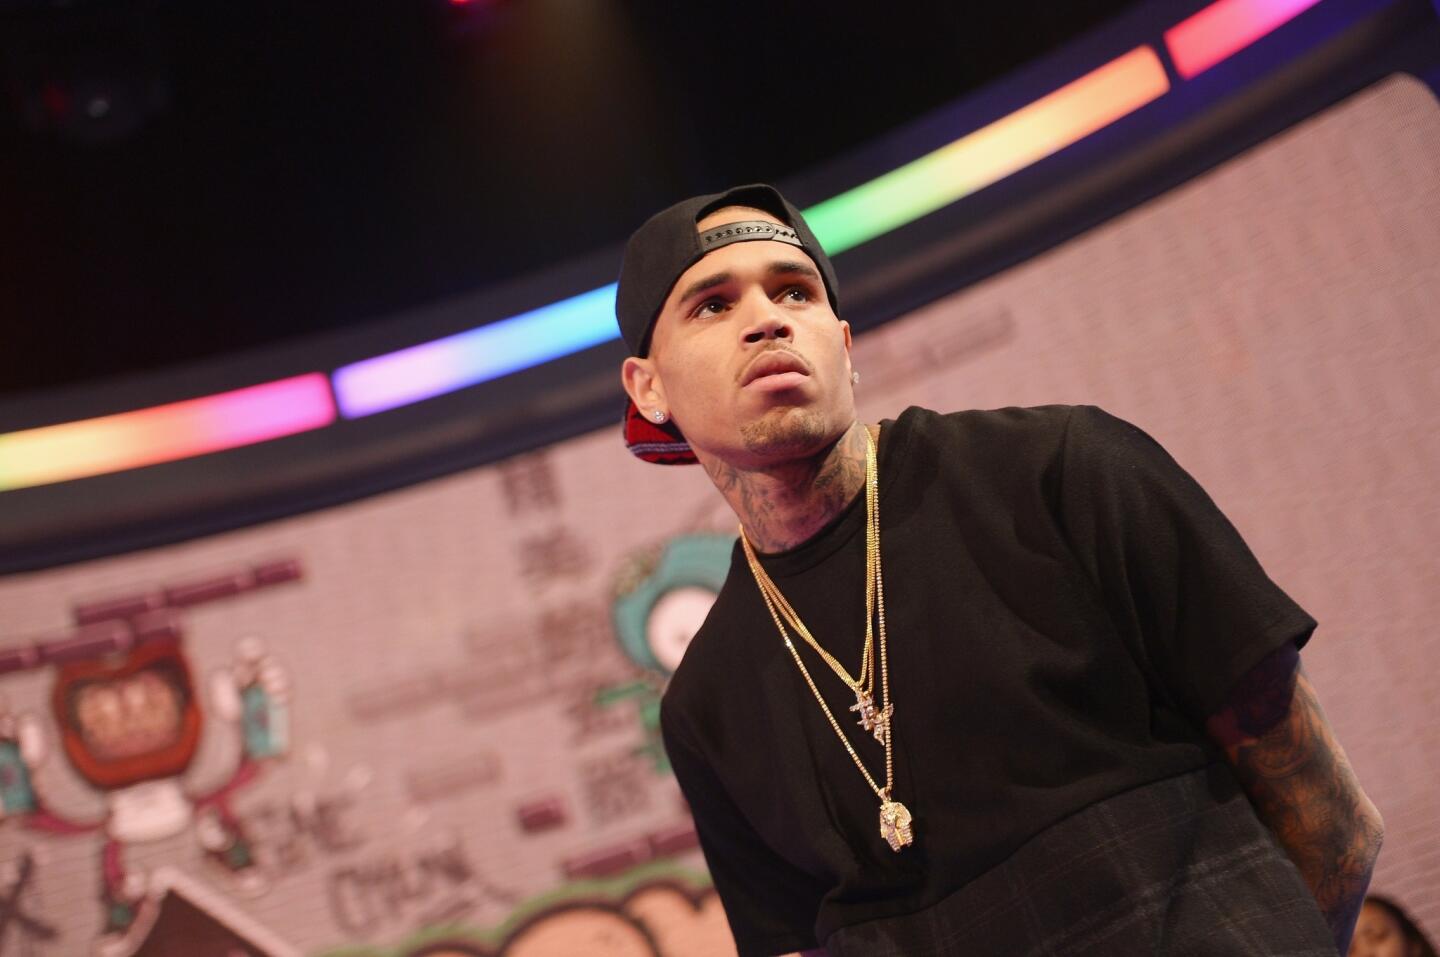 Chris Brown leaves rehab weeks earlier than expected